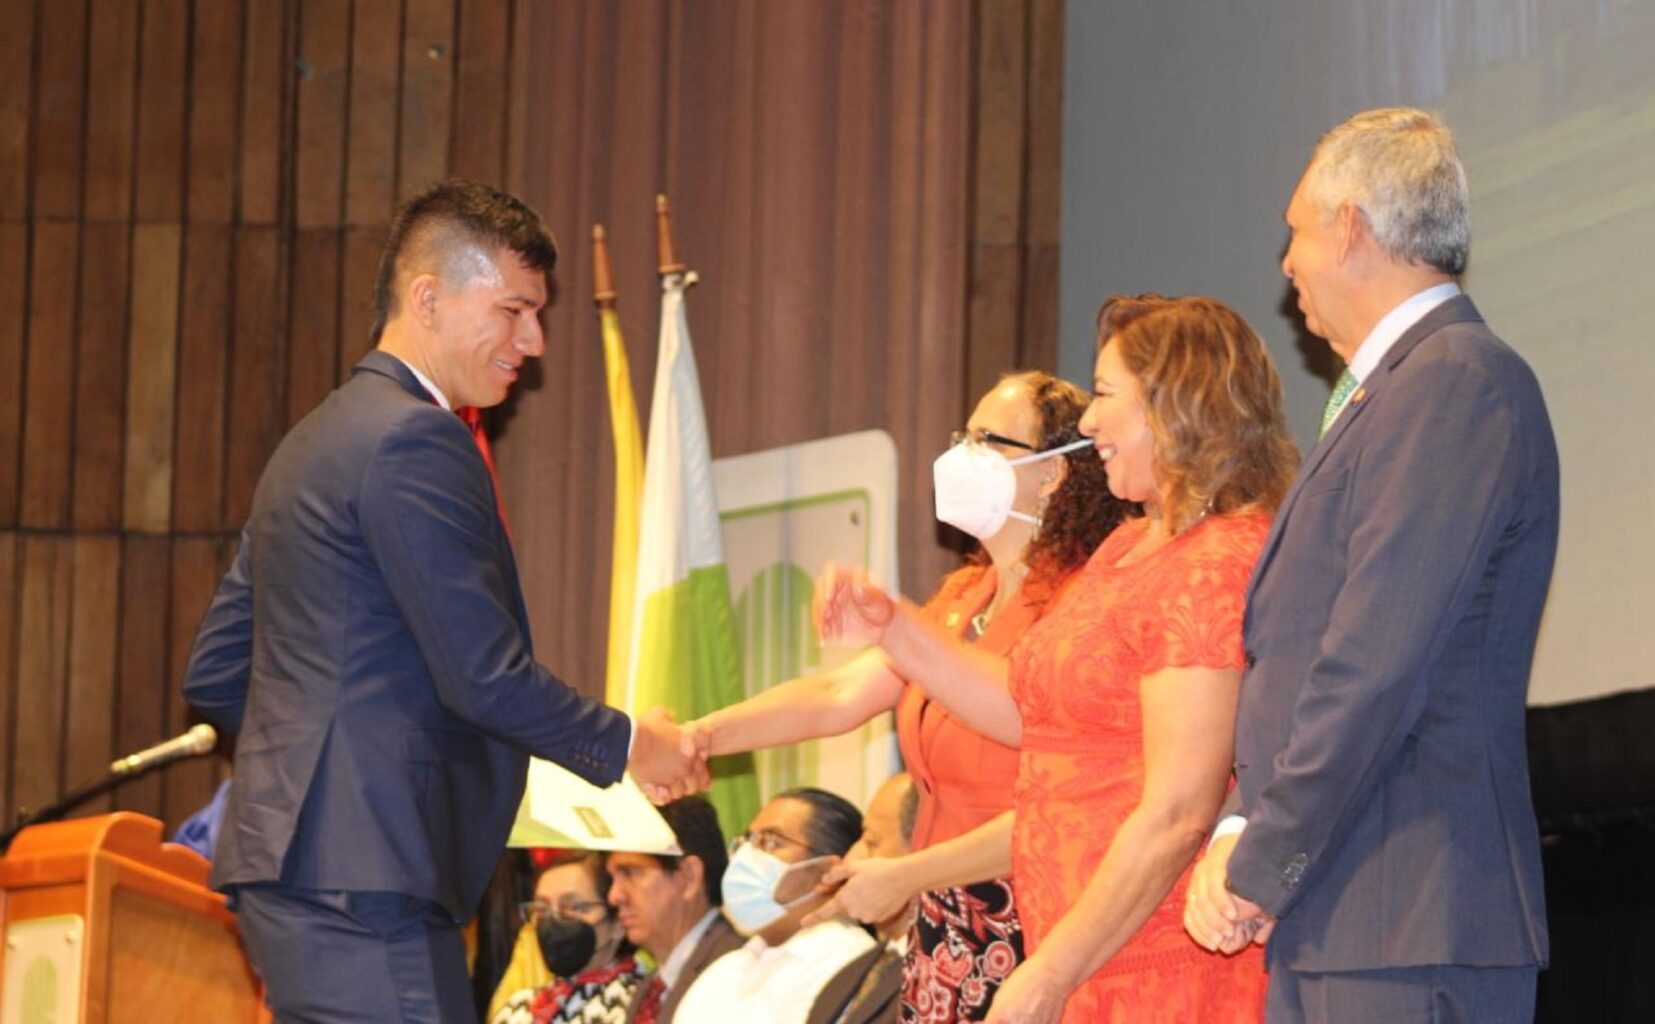 Imagen muestra a miembros del Consejo Académico felicitando a uno de los graduandos.